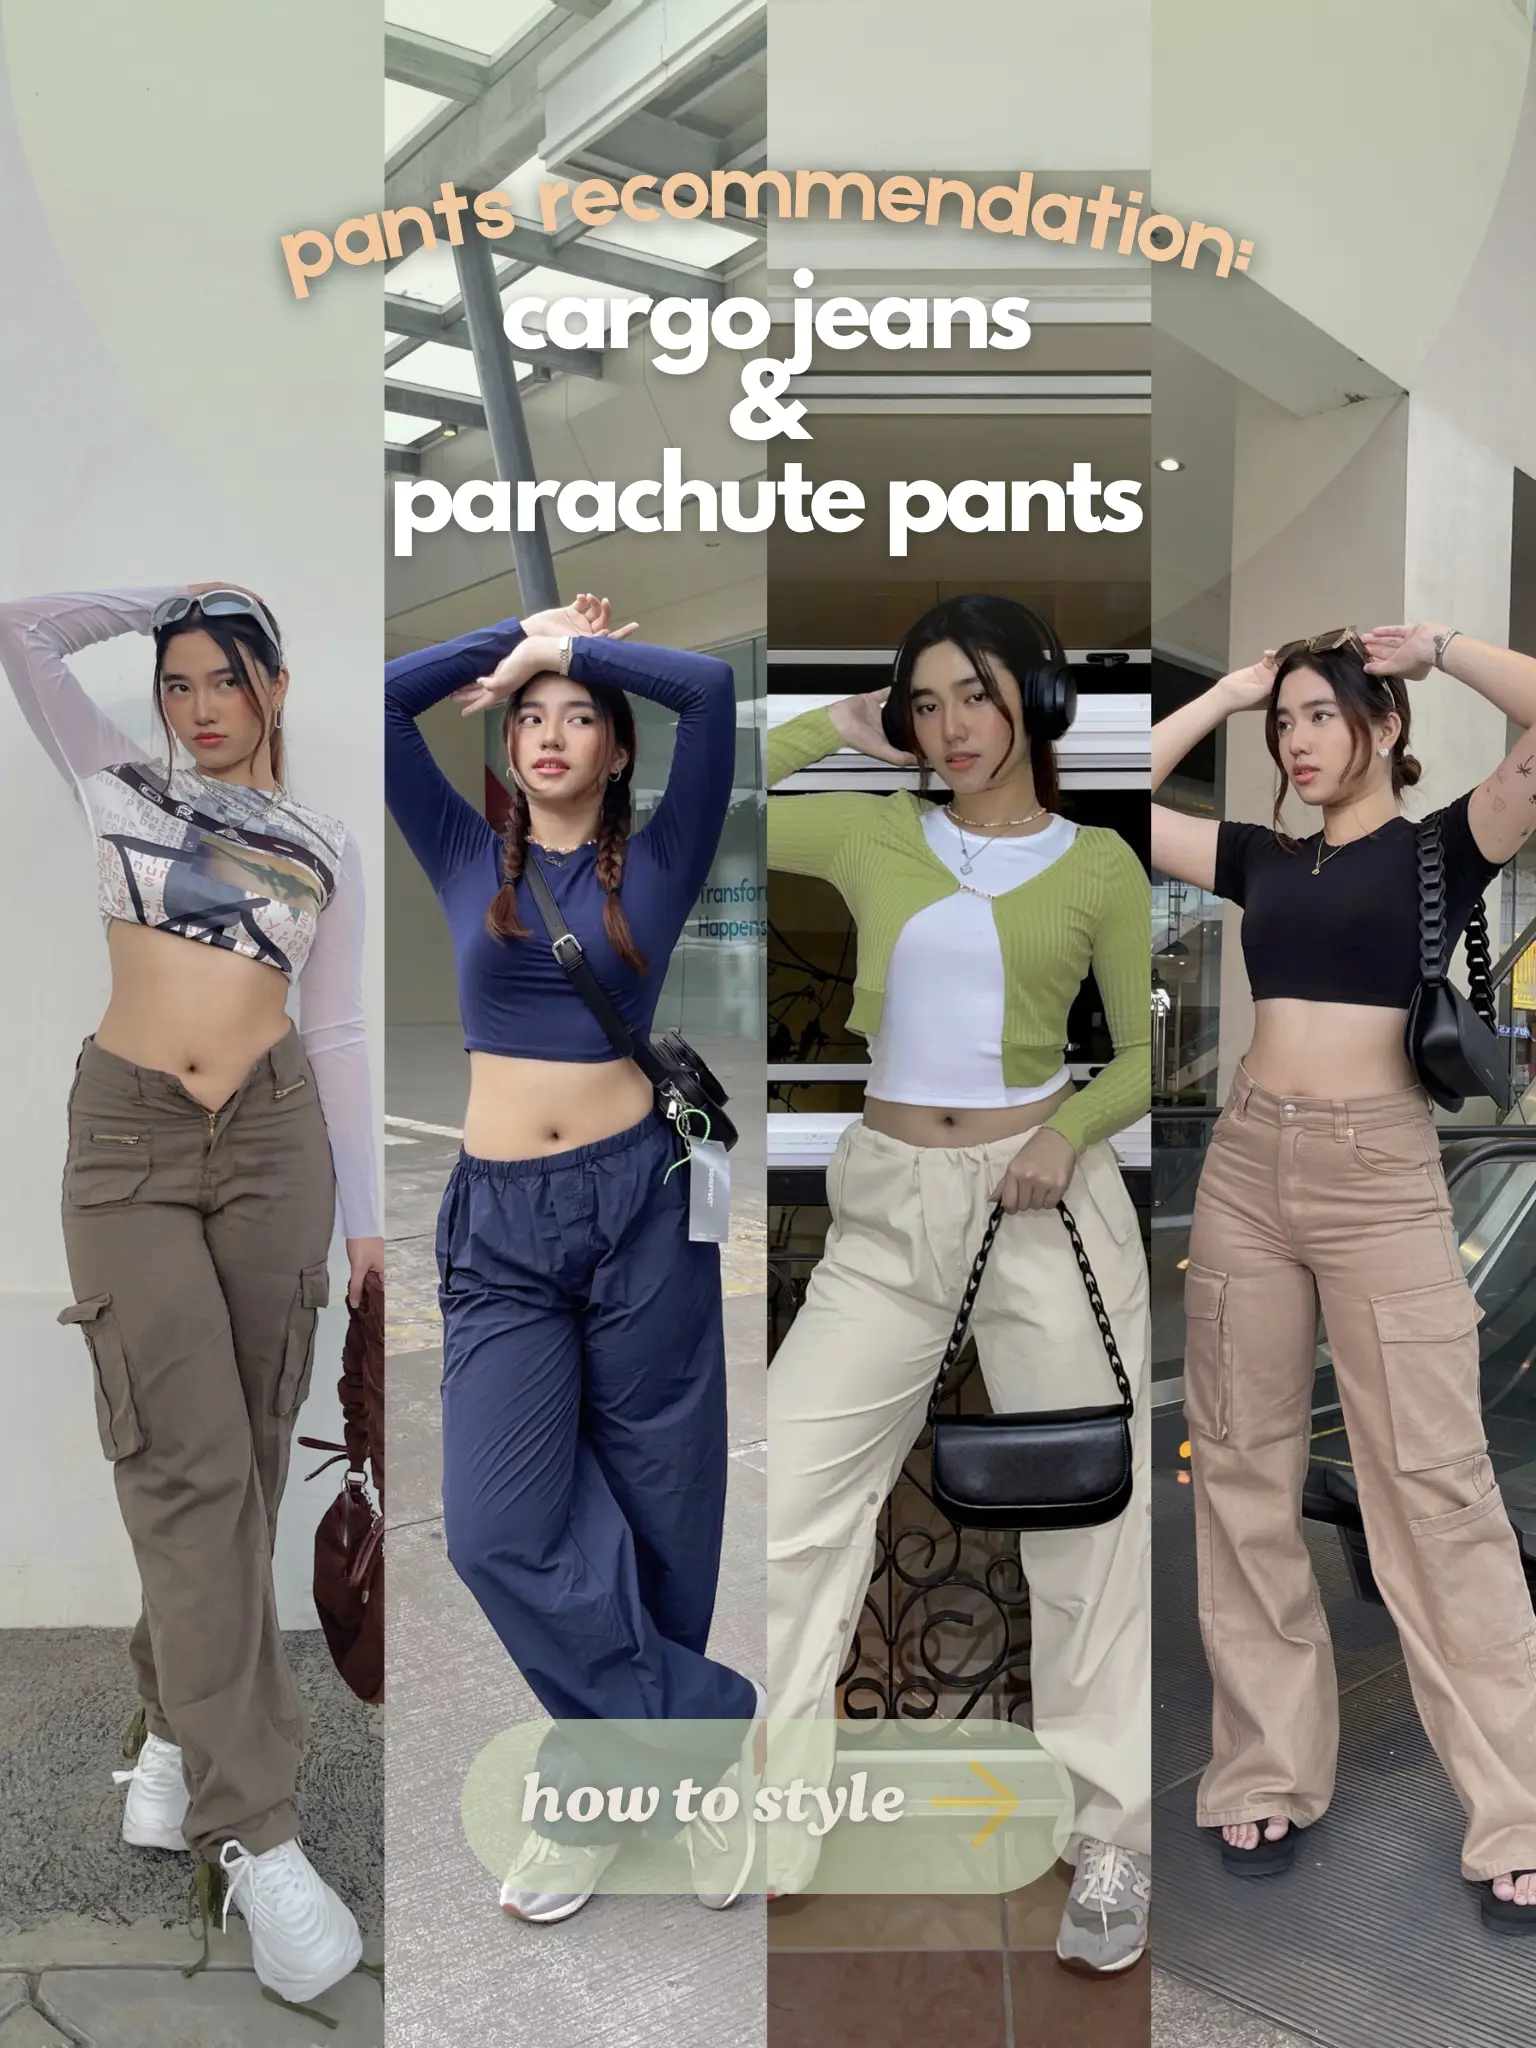 cargo pants outfit women - Lemon8 Search